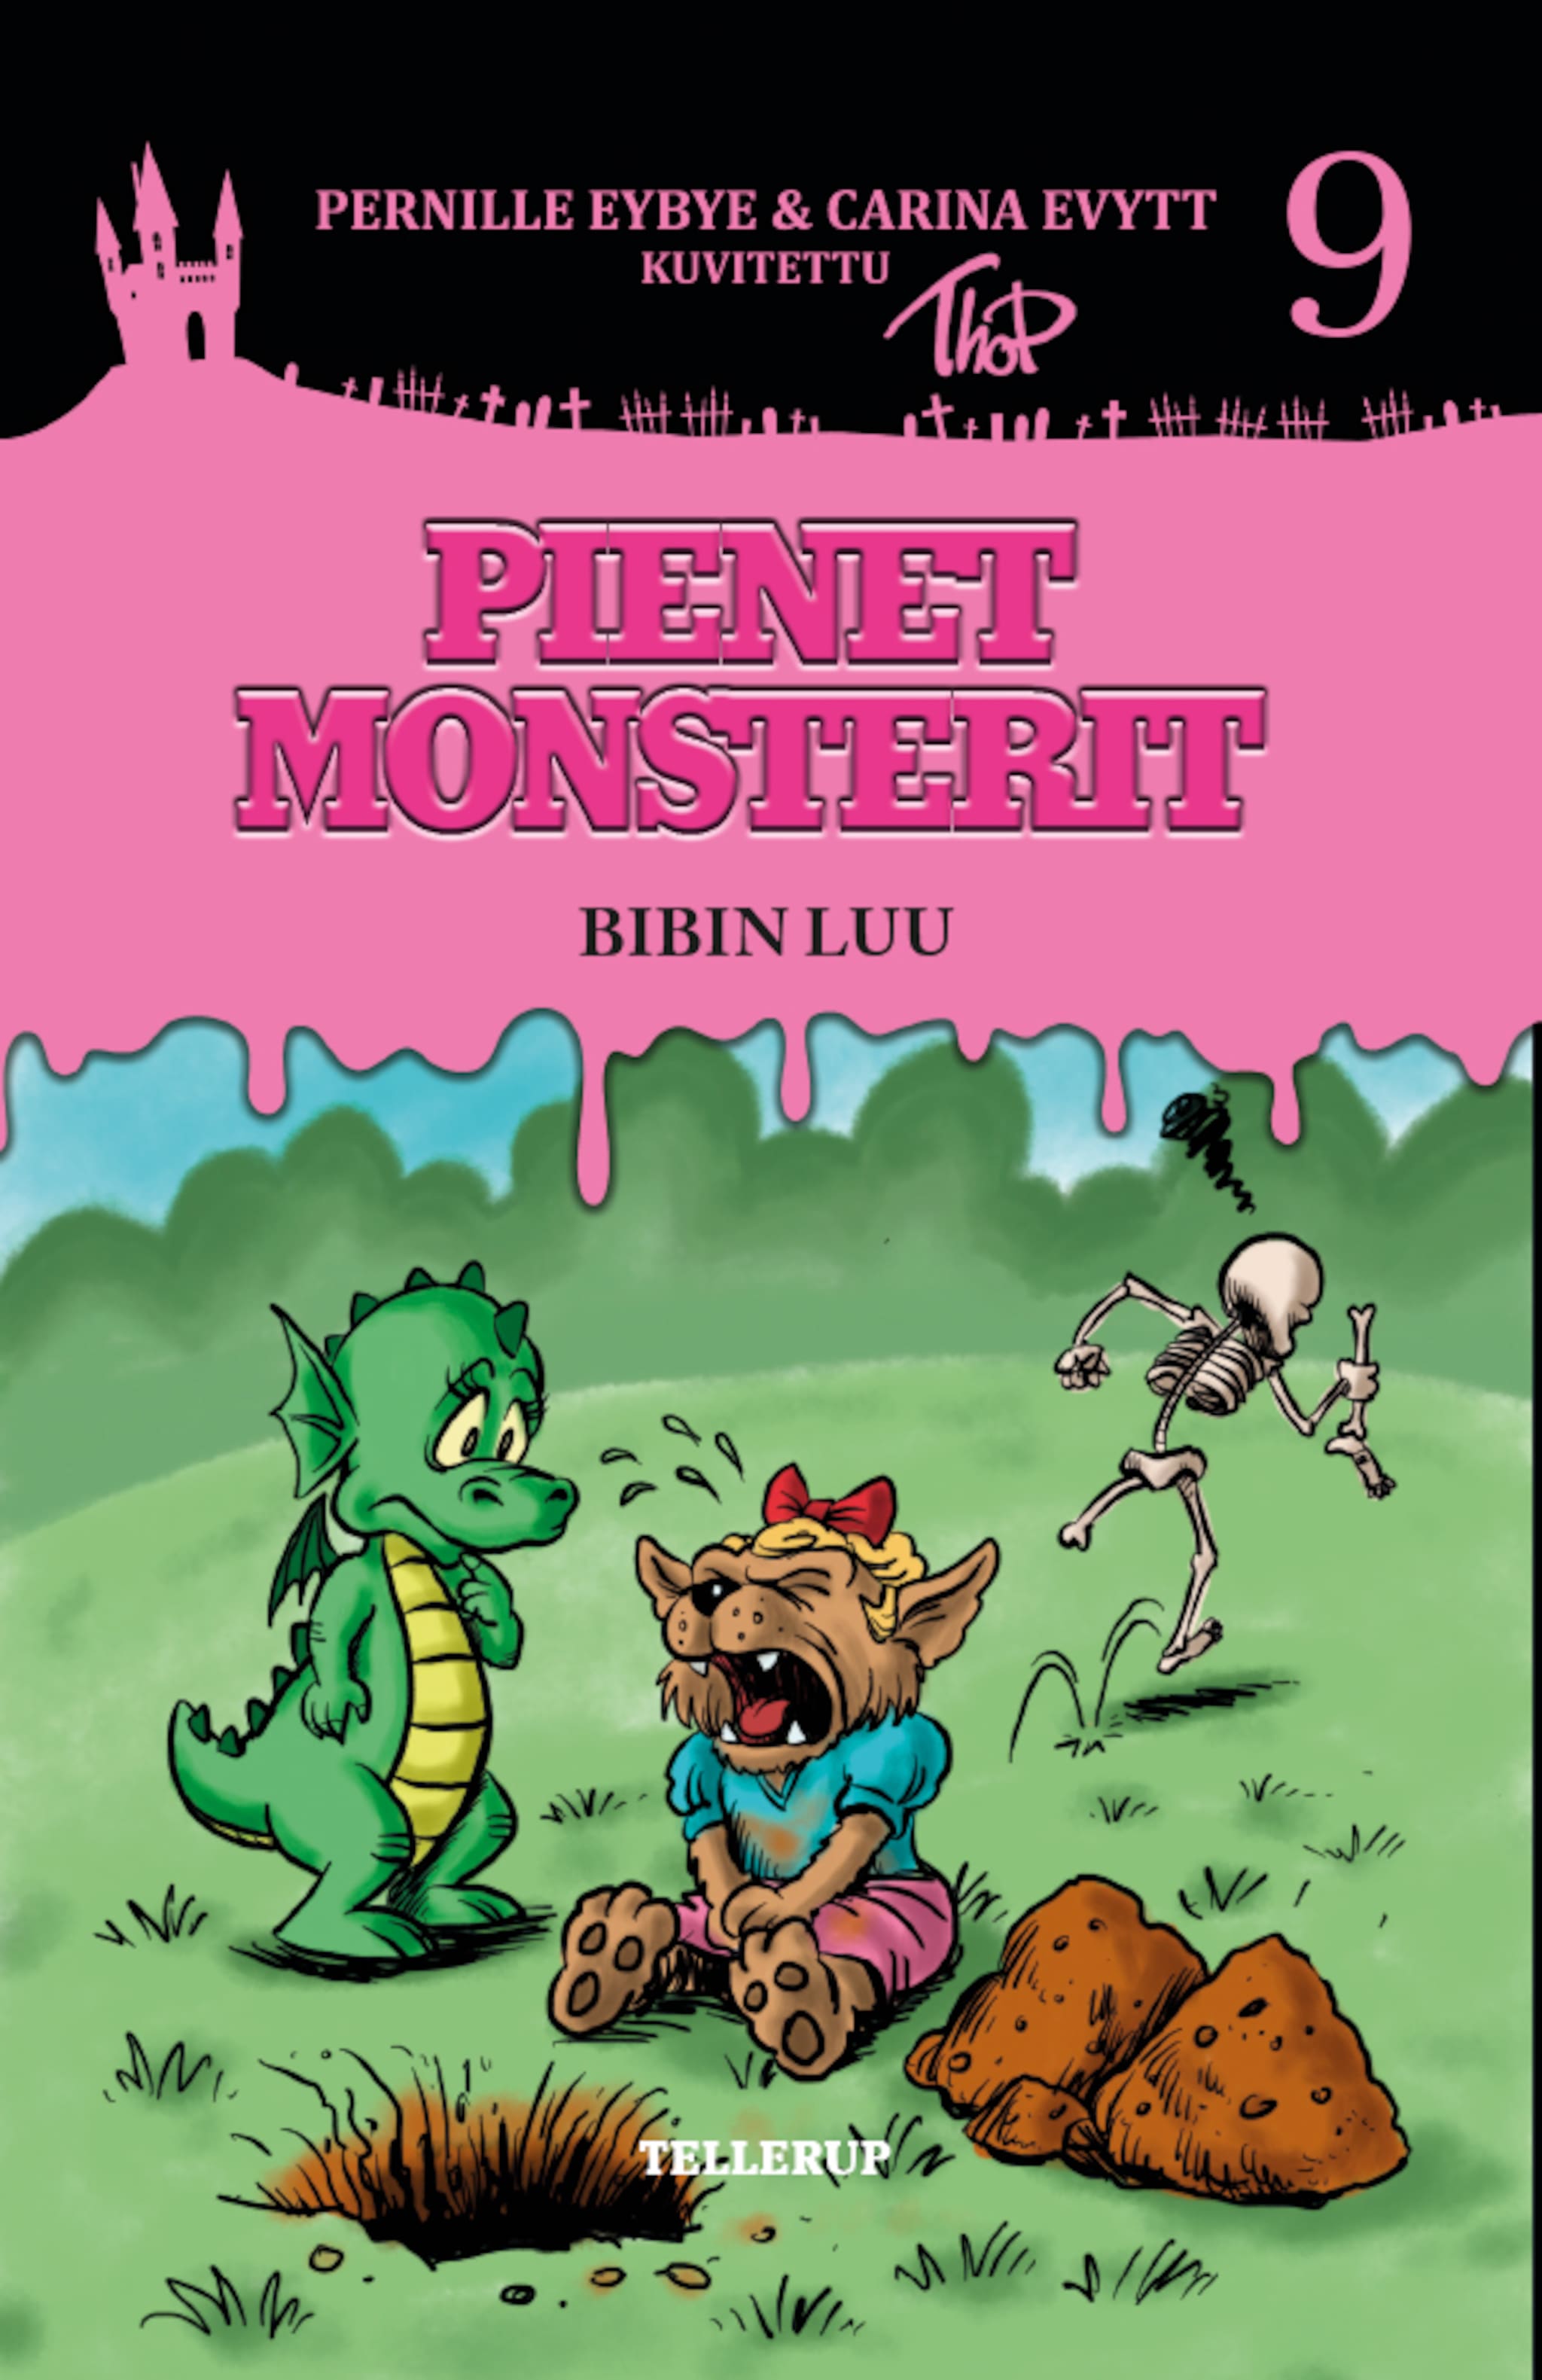 Pienet Monsterit #9: Bibin luu ilmaiseksi